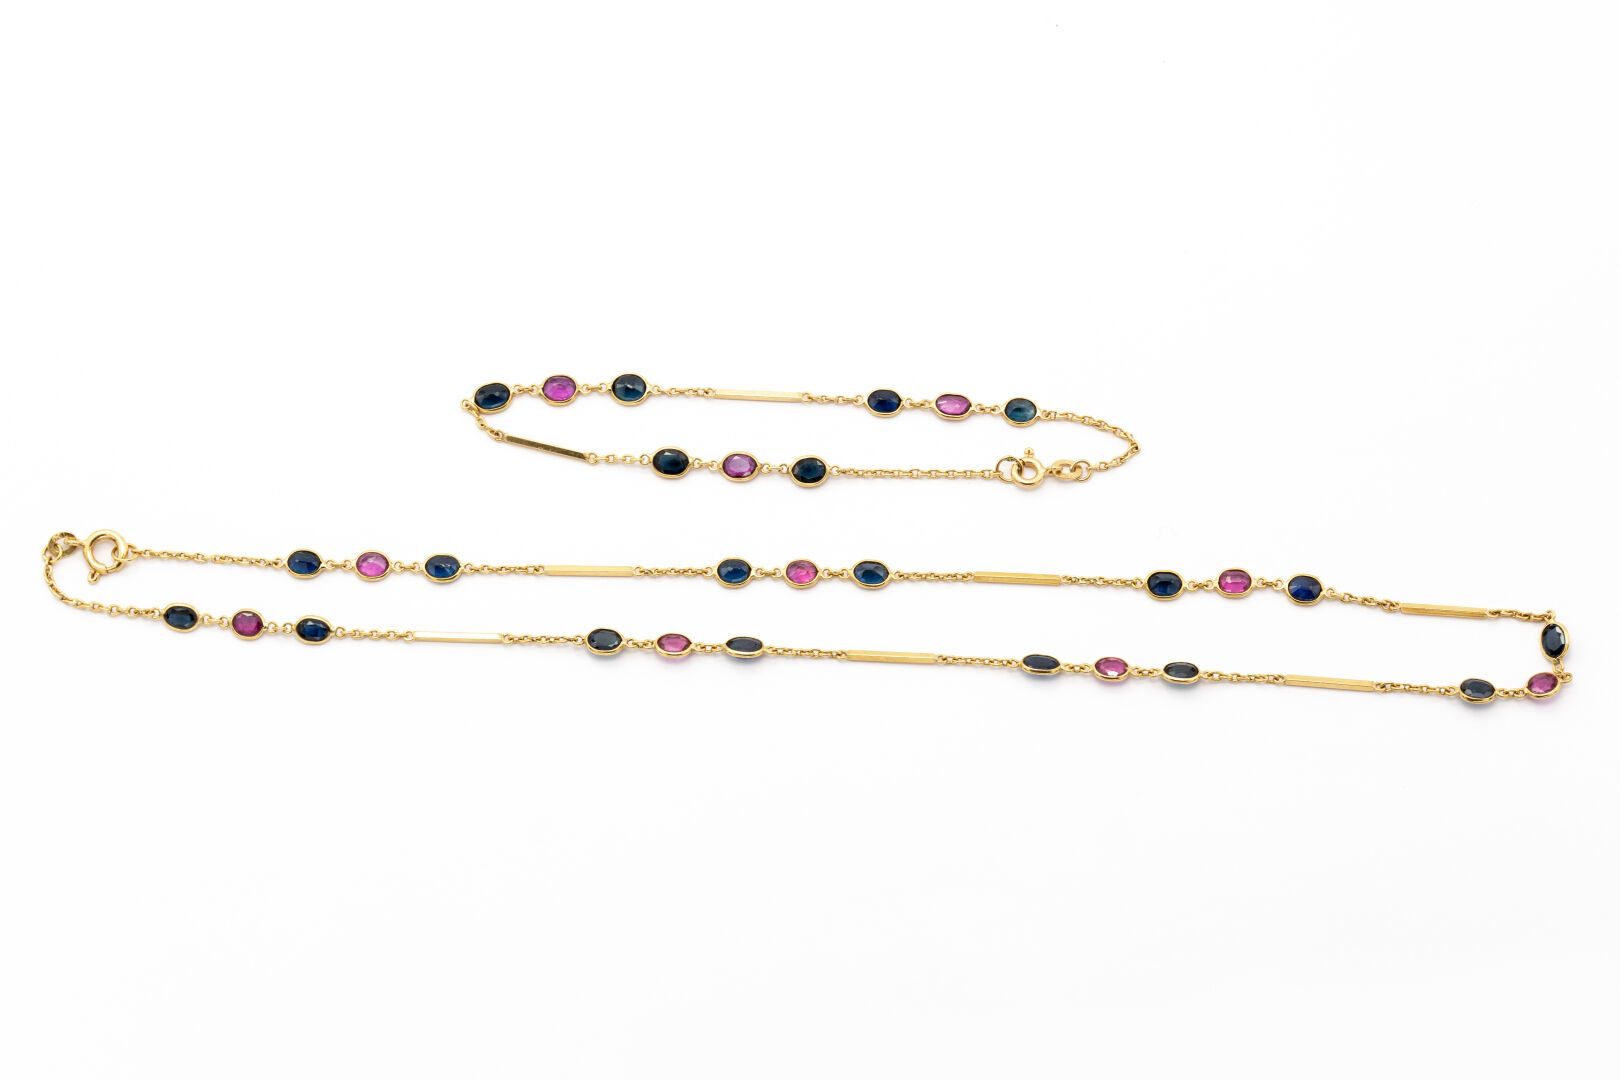 Null 18K黄金项链和手镯，棒状链接，镶嵌红宝石和蓝宝石。

重量 : 7,30 g

HIBOU